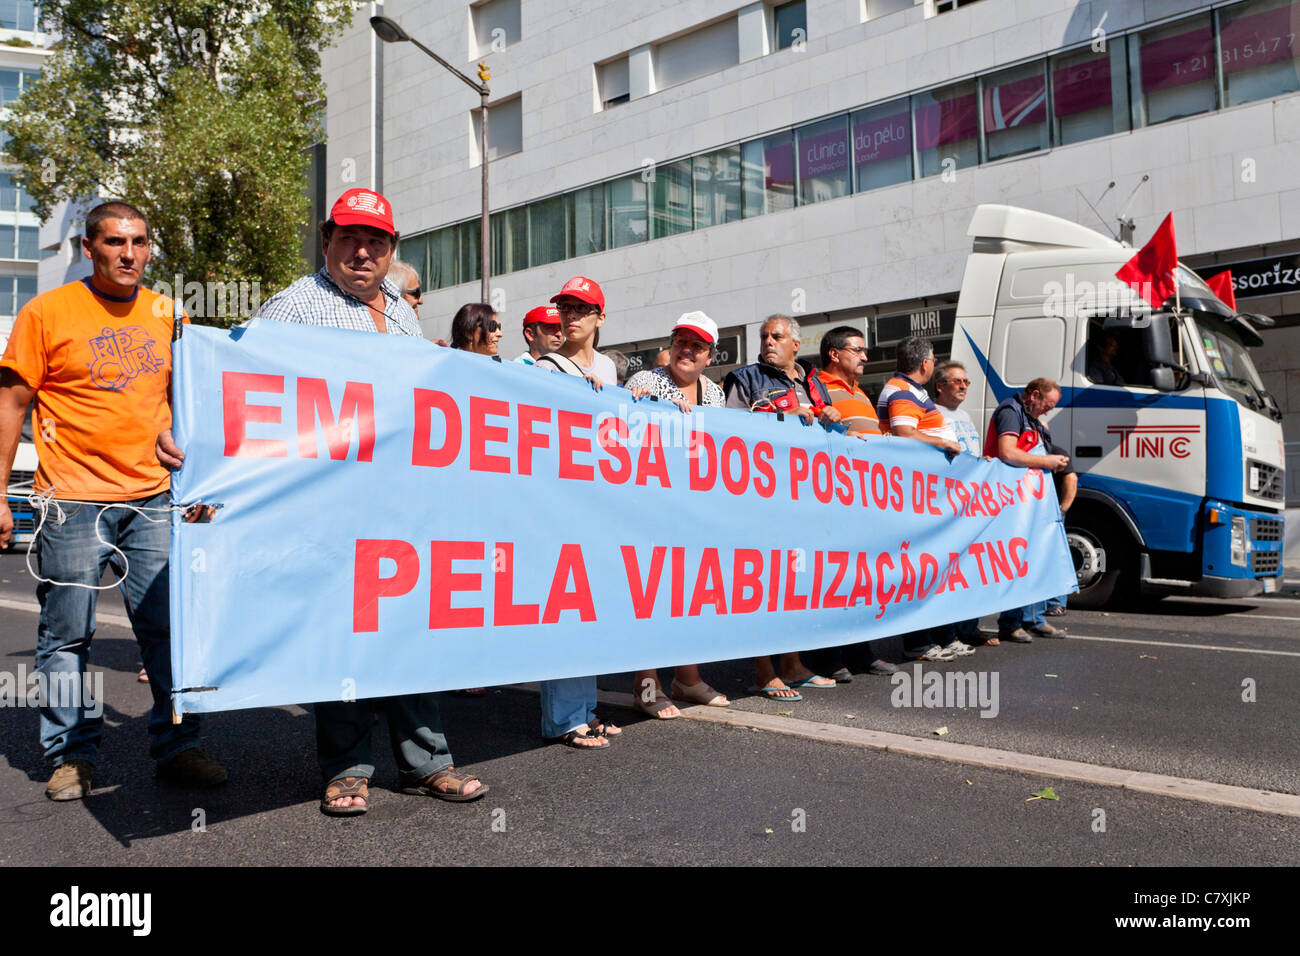 Les travailleurs de la compagnie de transport du CNC qui est insolvable. Manifestation contre le FMI / plan de rigueur. Lisbonne, le 1er octobre 2011 Banque D'Images